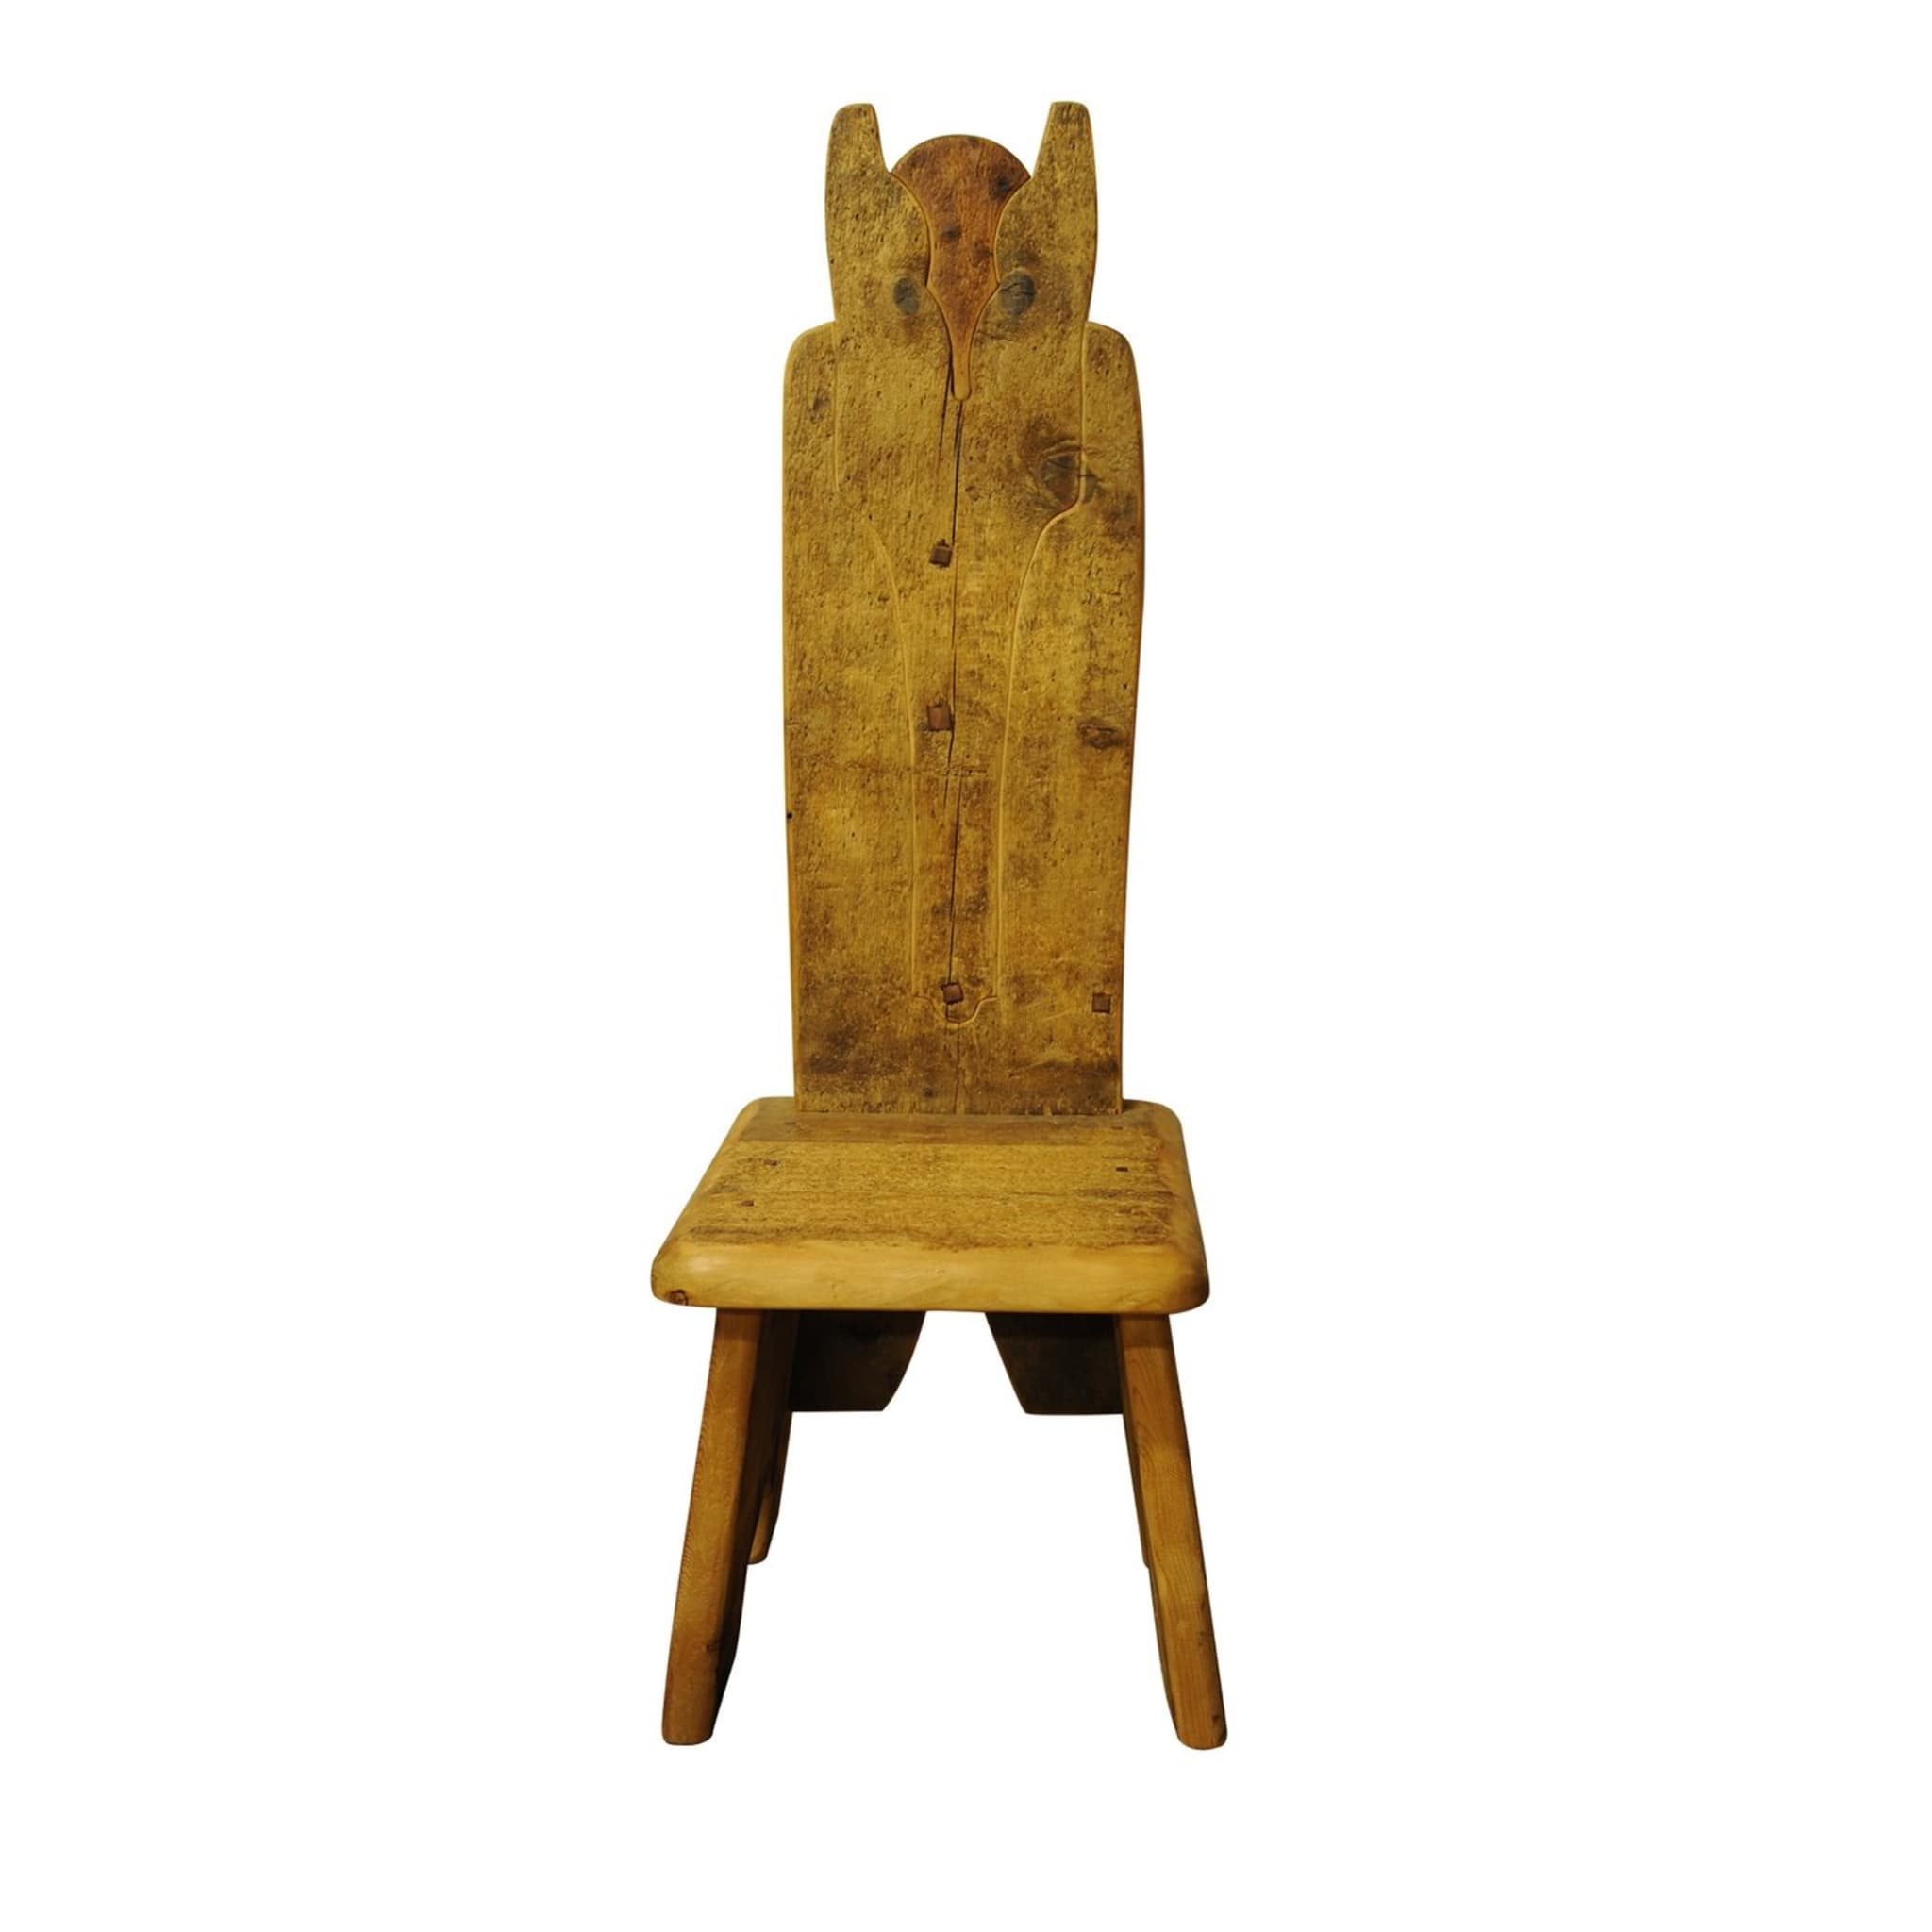 Owl Throne Chair - Main view